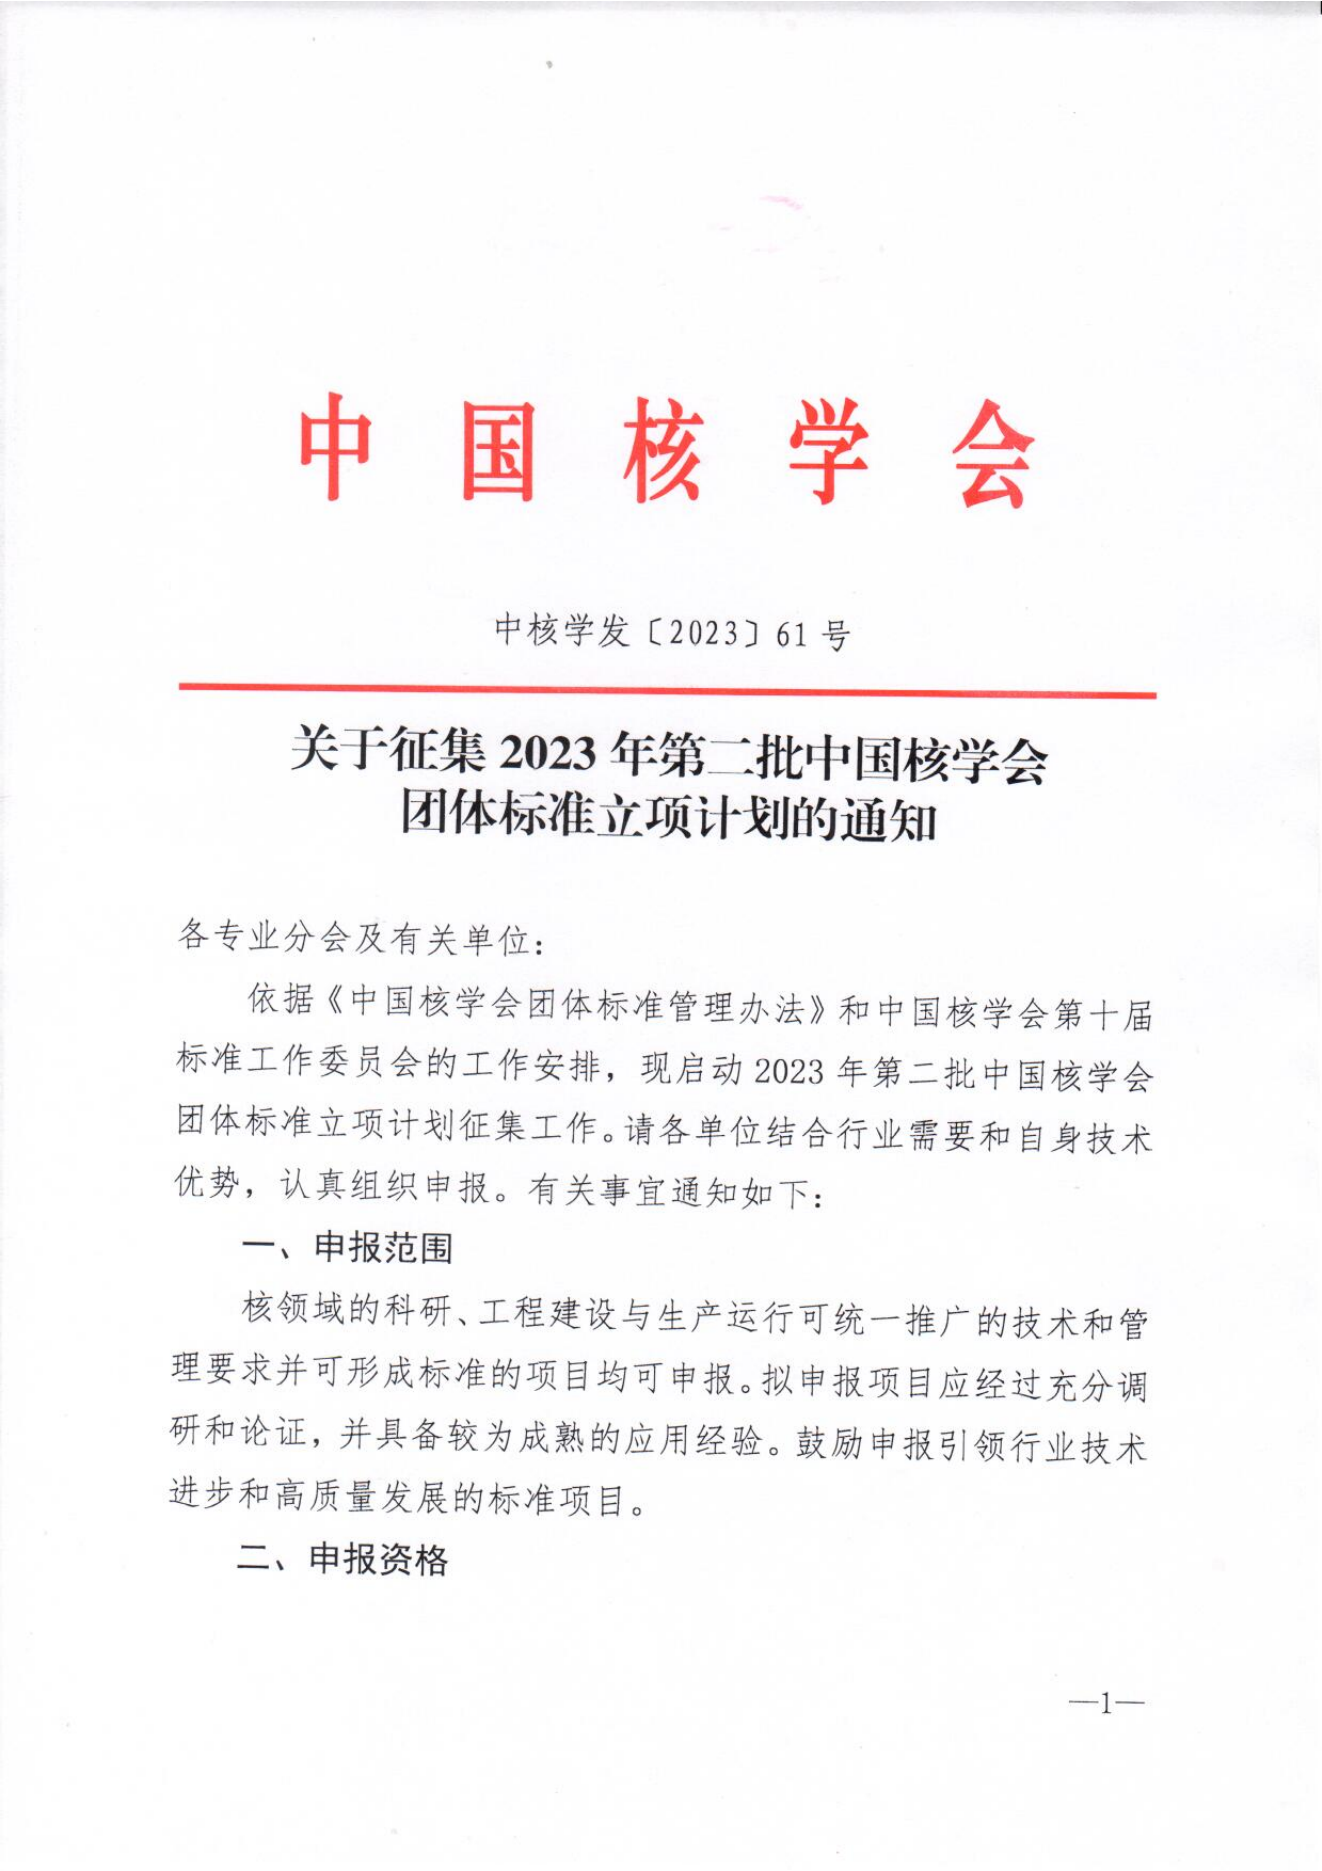 关于征集2023年第二批中国核学会团体标准立项计划的通知-8.21_00.png